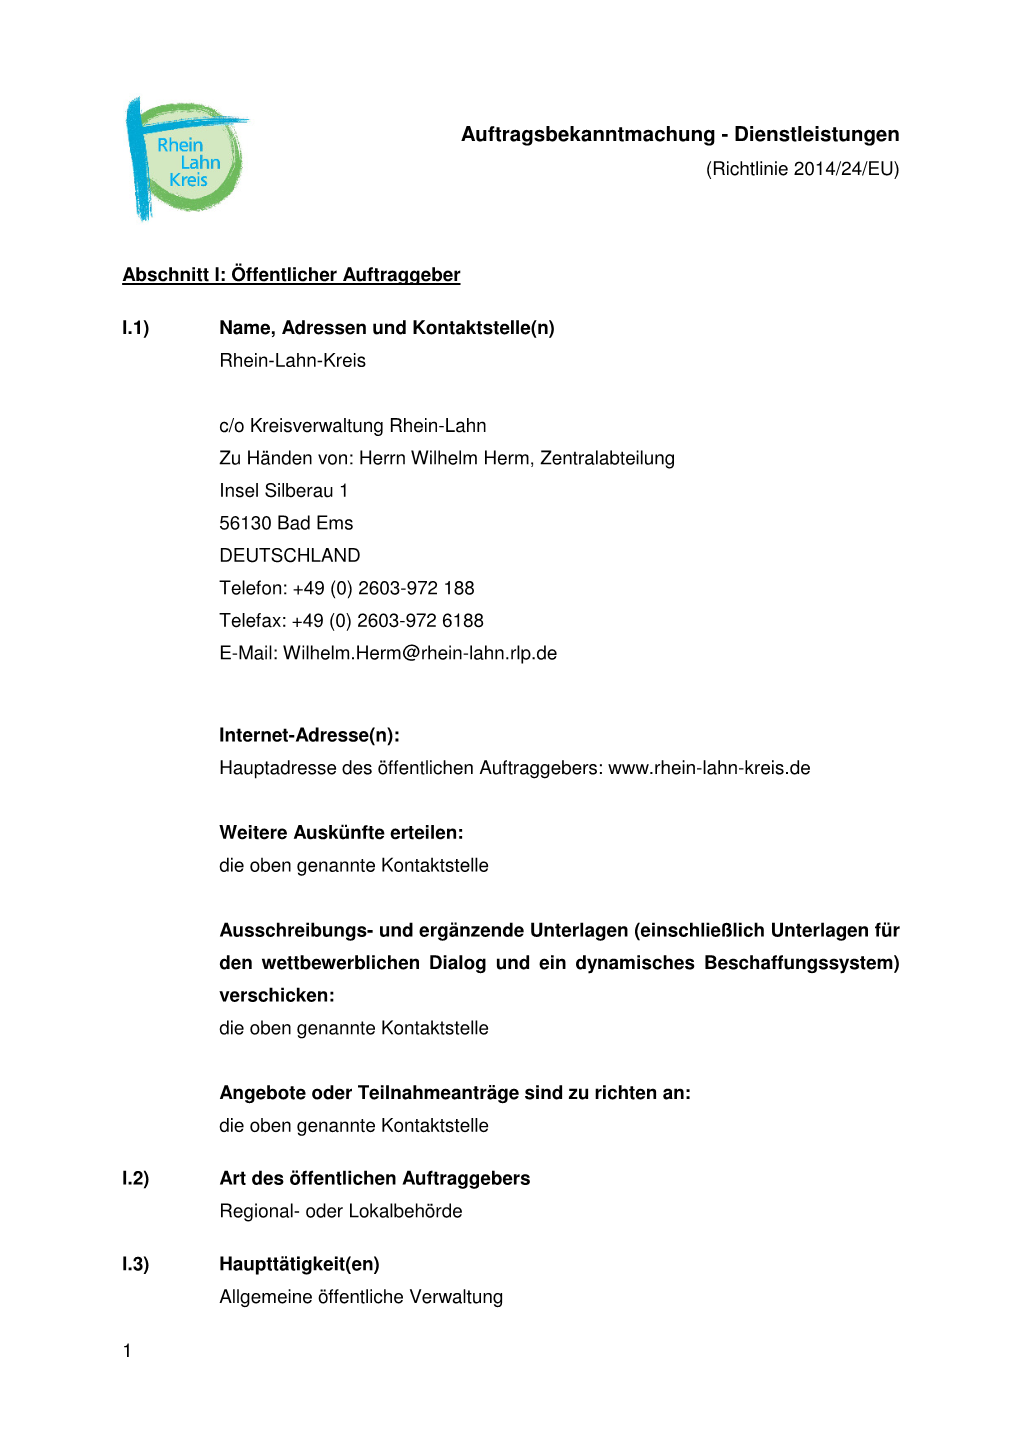 Auftragsbekanntmachung - Dienstleistungen (Richtlinie 2014/24/EU)